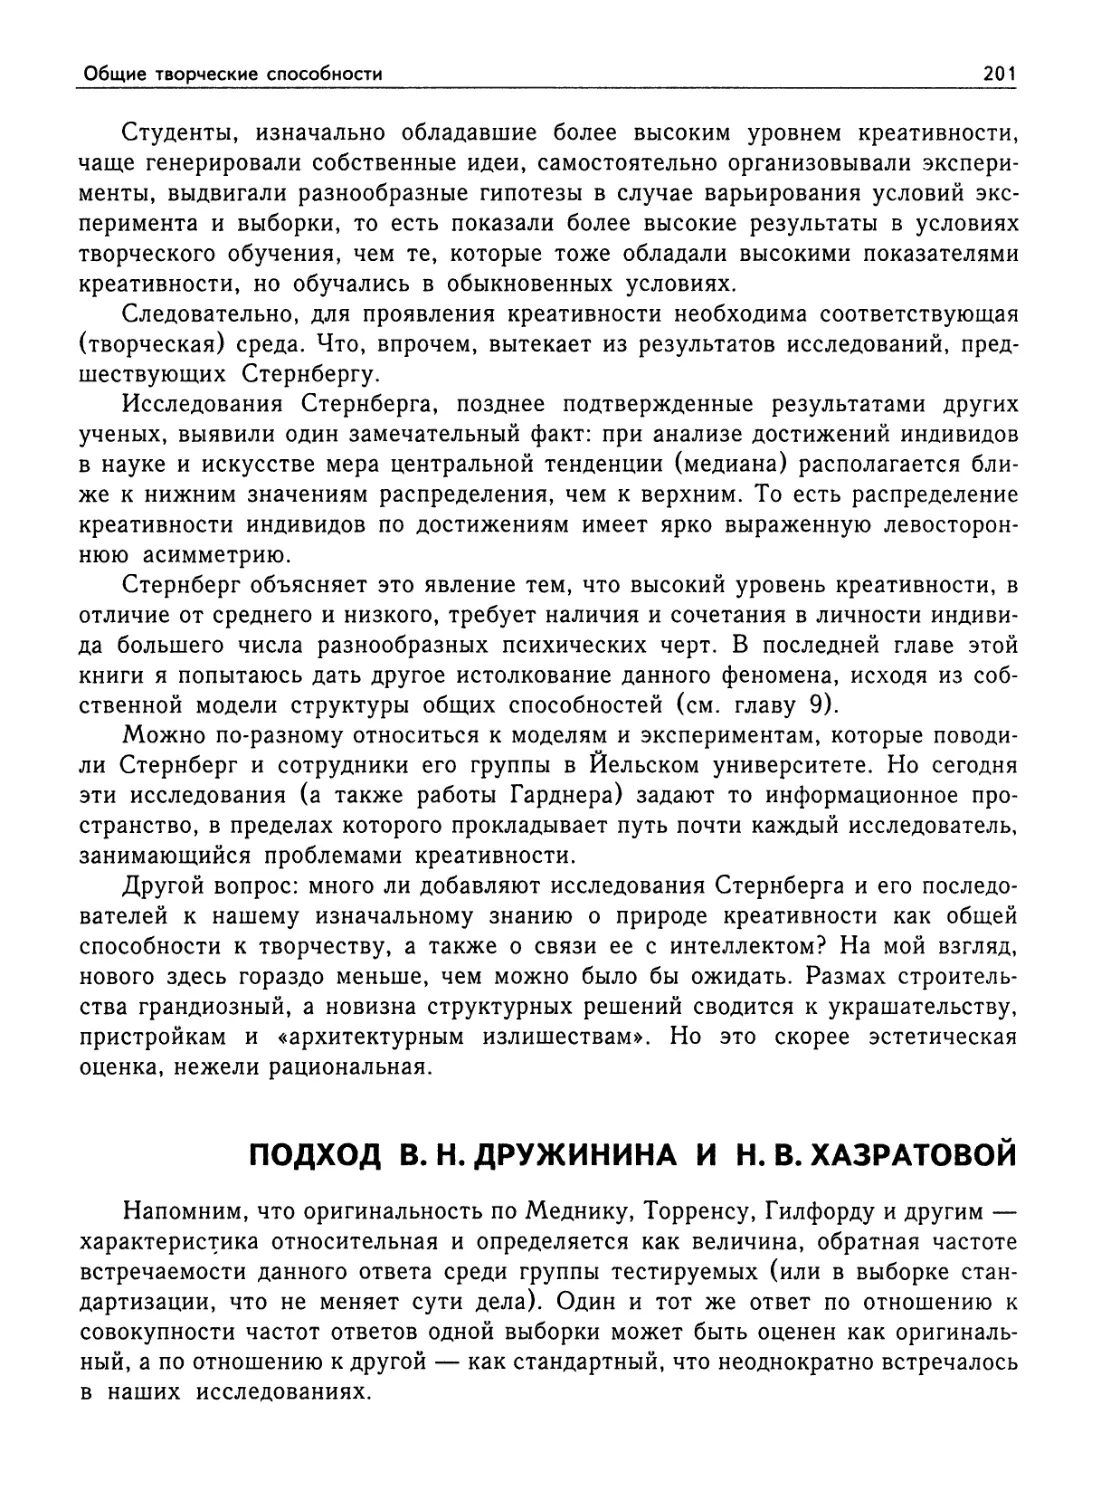 Подход В. Н. Дружинина и Н. В. Хазратовой